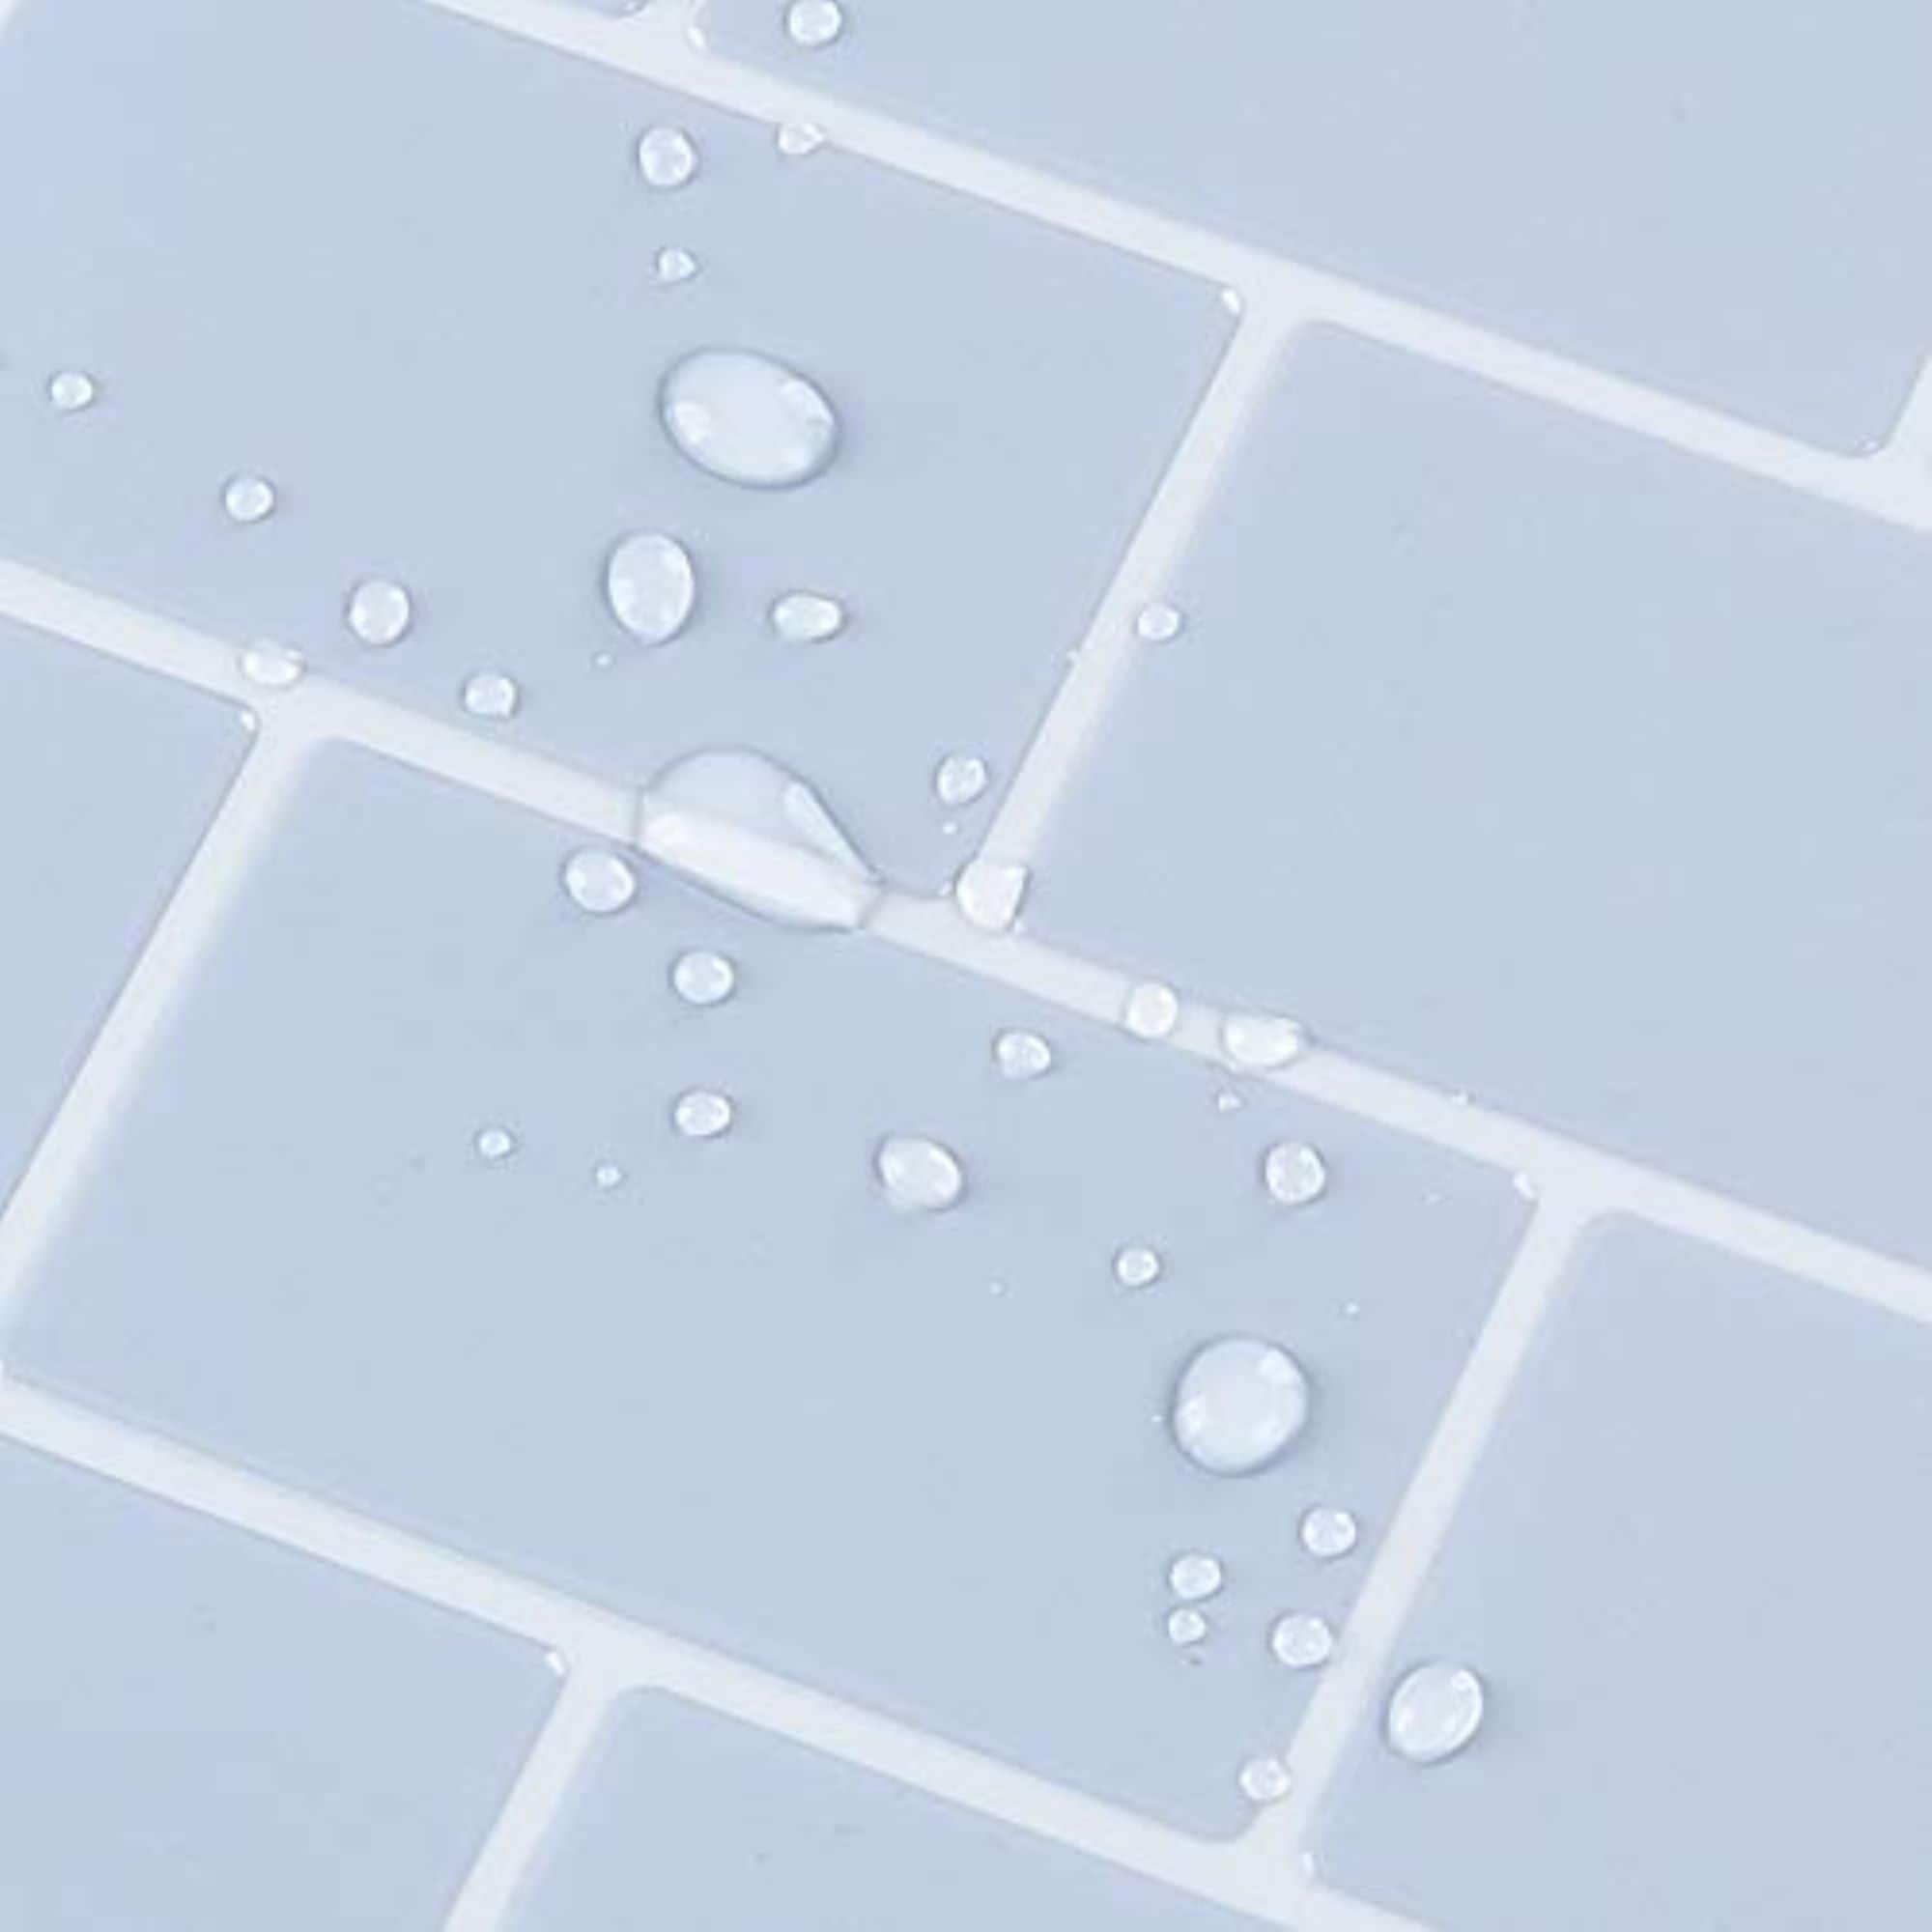 Peel and Stick Backsplash Tile - Smart Tiles Blok Beige X Large - Kitchen  and Bathroom Stick on Tiles - On Sale - Bed Bath & Beyond - 34159061